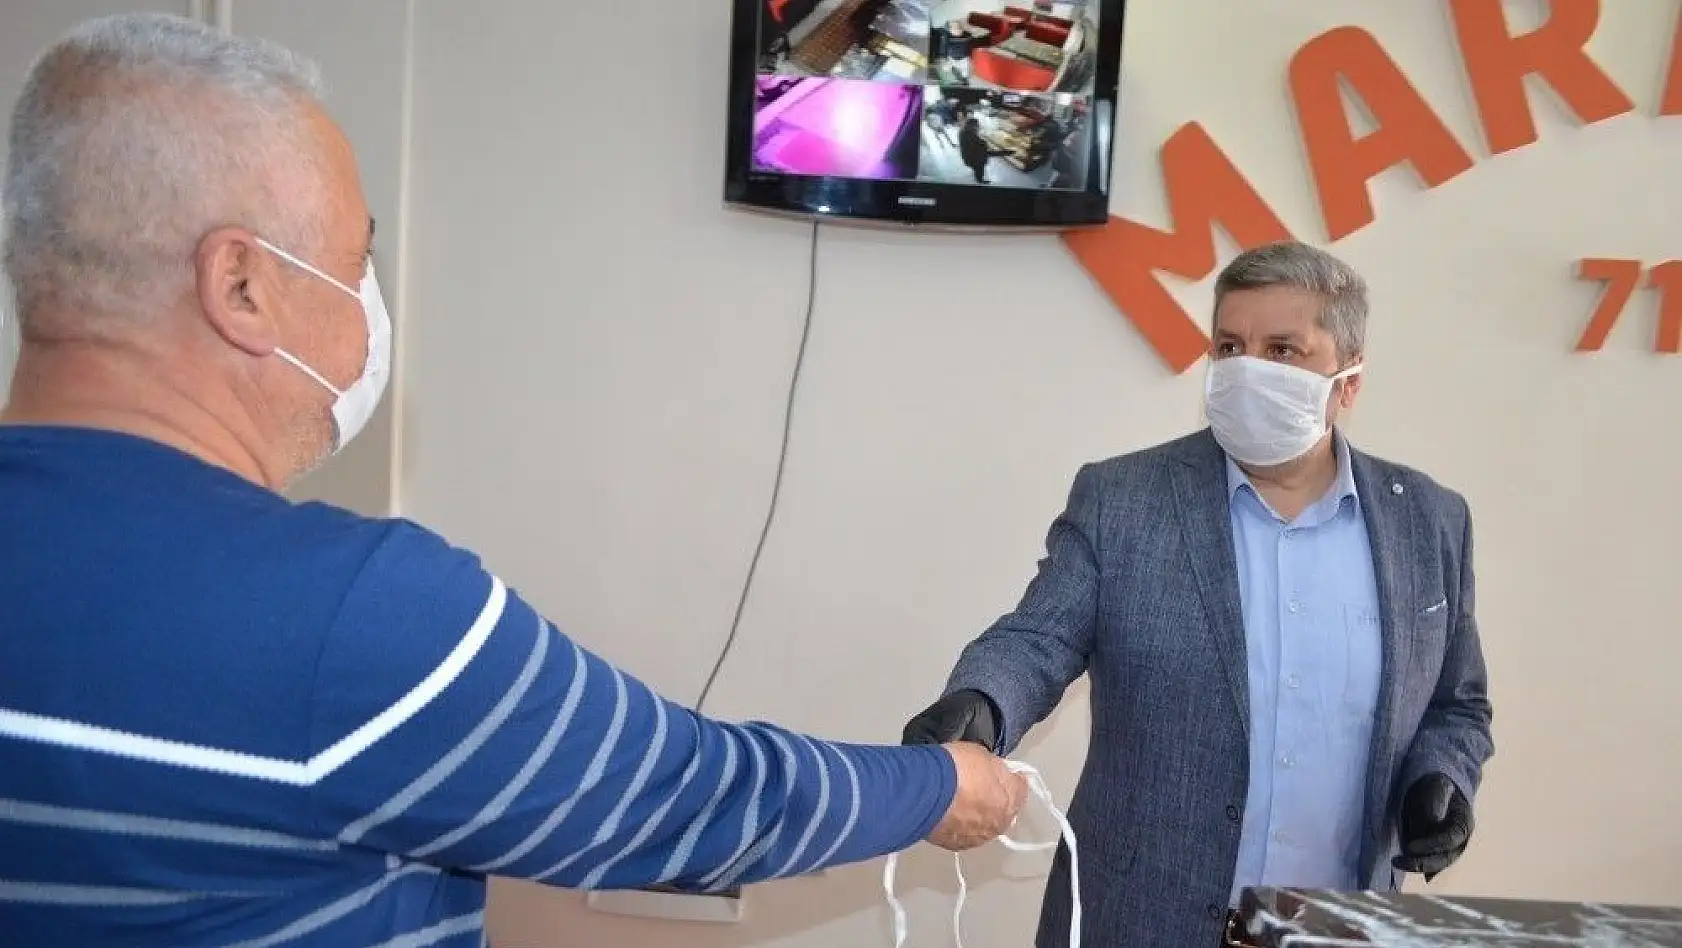 Bünyan Belediyesi esnaflara ücretsiz maske dağıtıyor